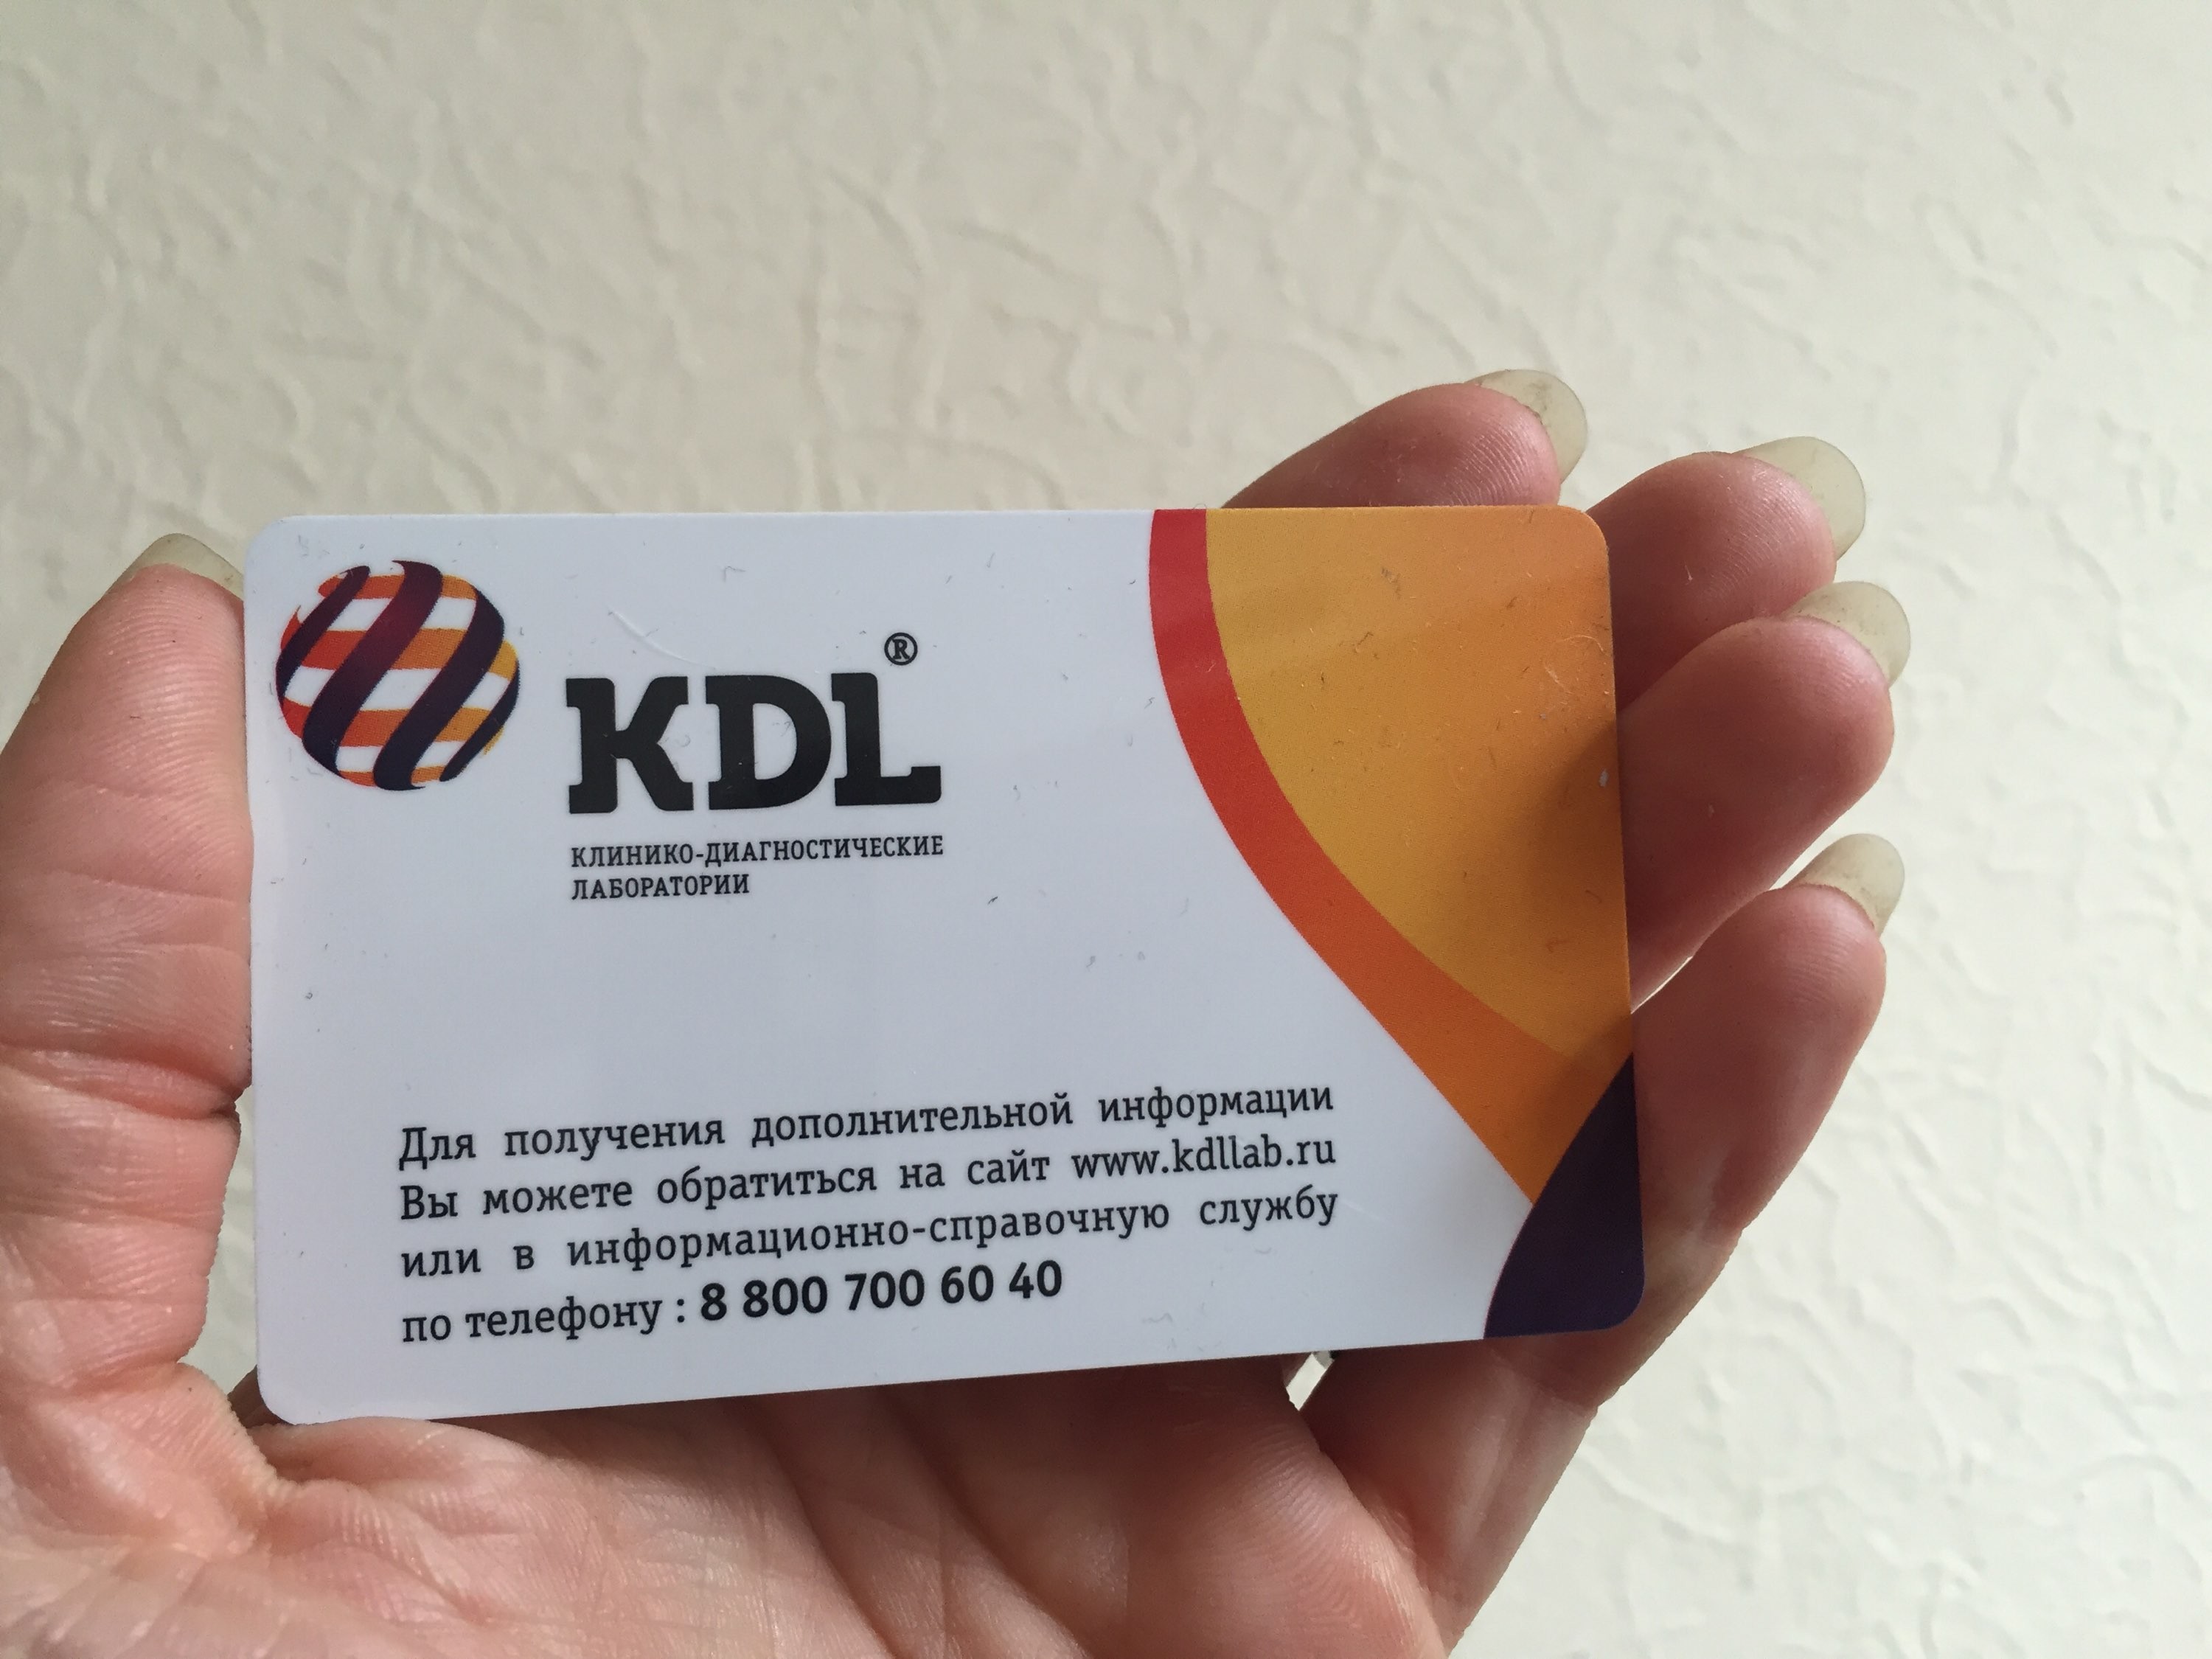 Кдл позвонить. КДЛ. KDL лаборатория. KDL логотип. Логотип КДЛ лаборатория.